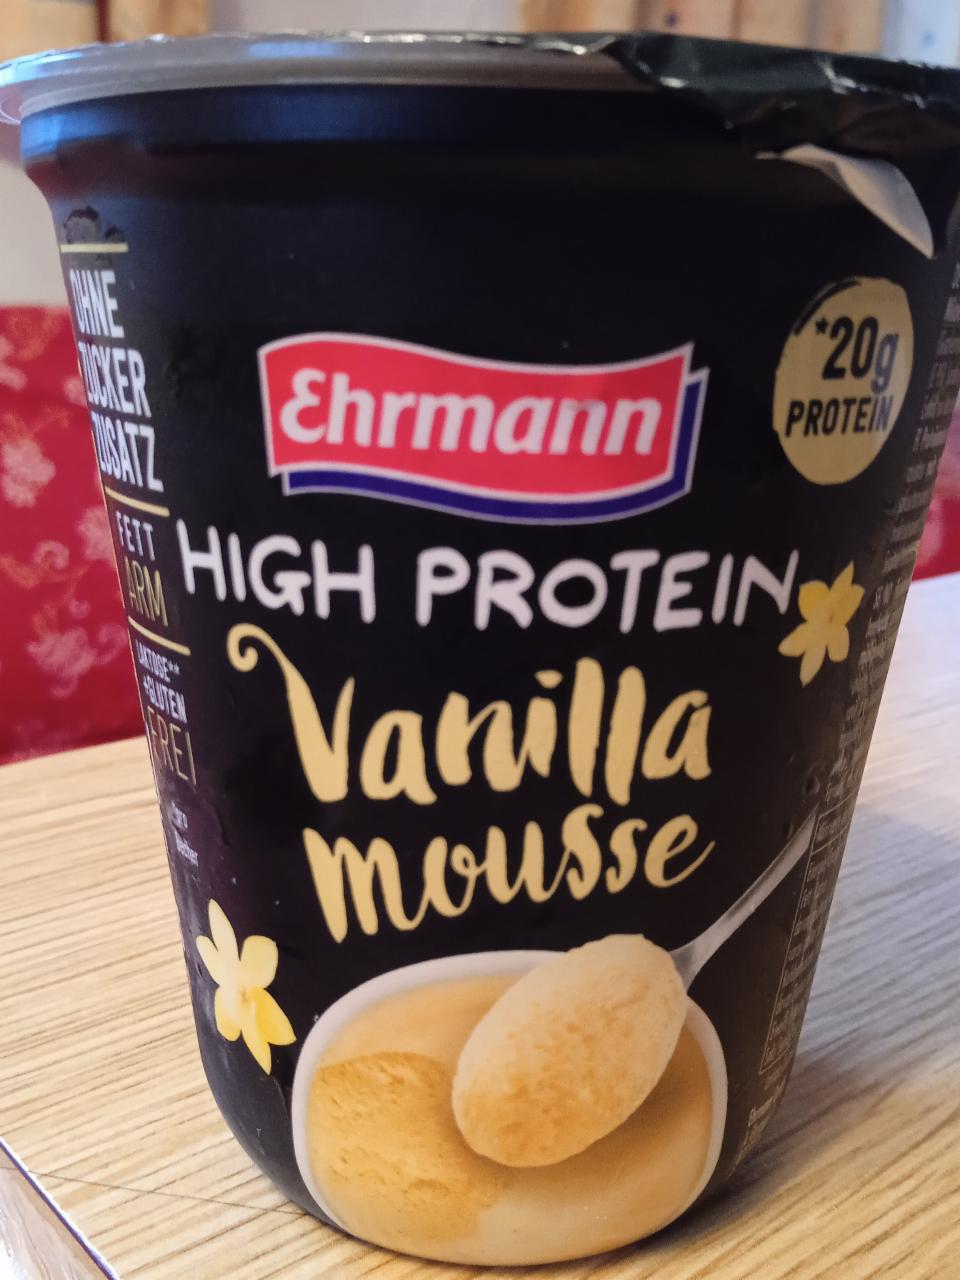 Képek - High protein vanilla mousse Ehrmann